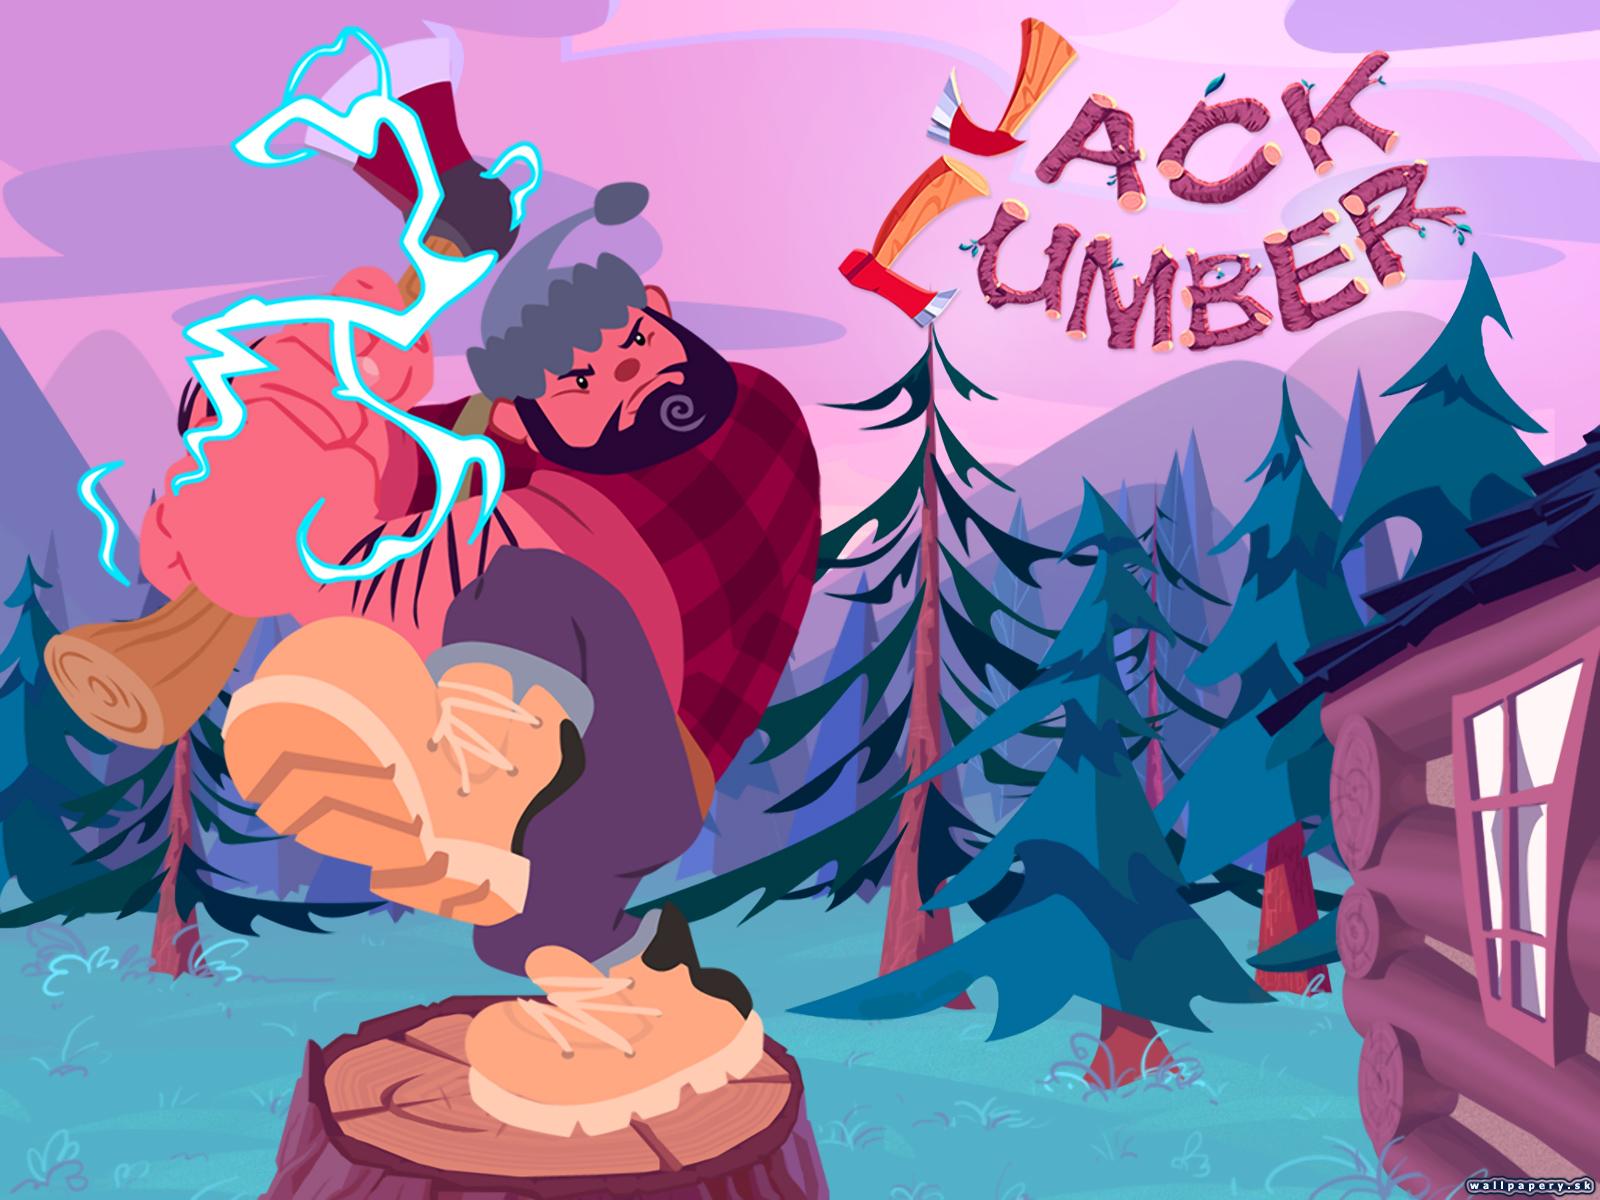 Jack Lumber - wallpaper 2